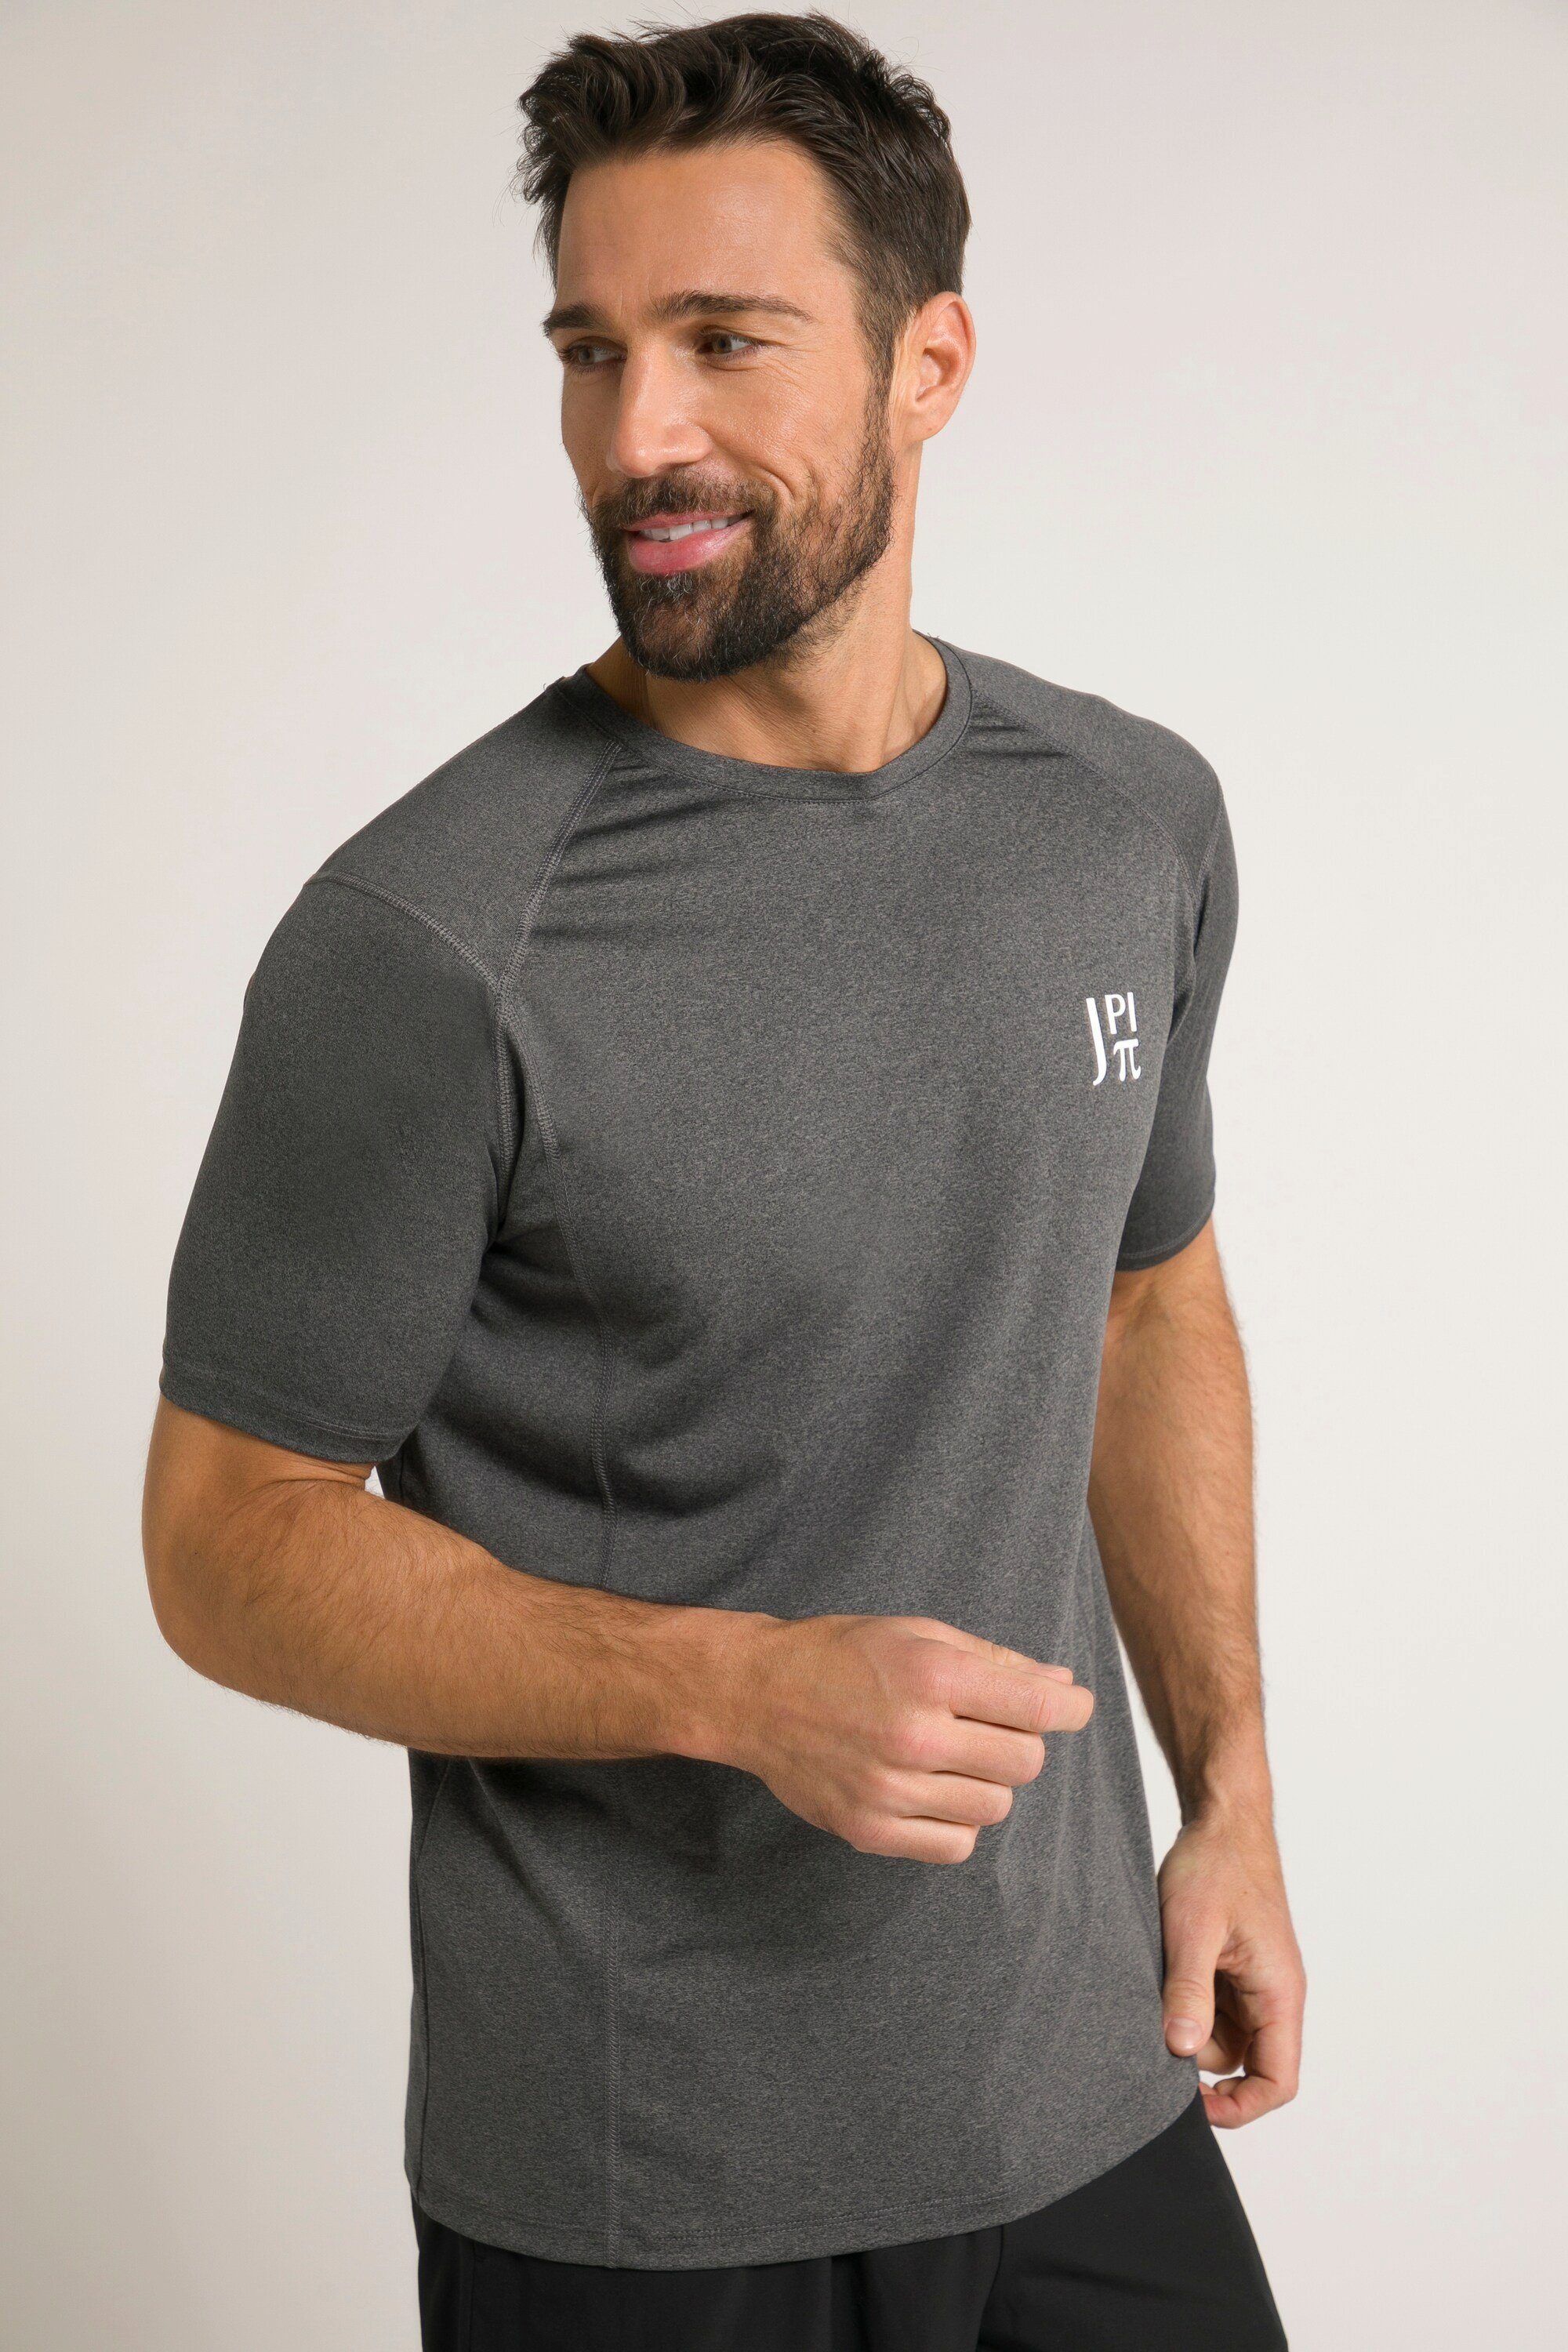 JP1880 T-Shirt Funktions-Shirt FLEXNAMIC® Fitness Halbarm anthrazit melange